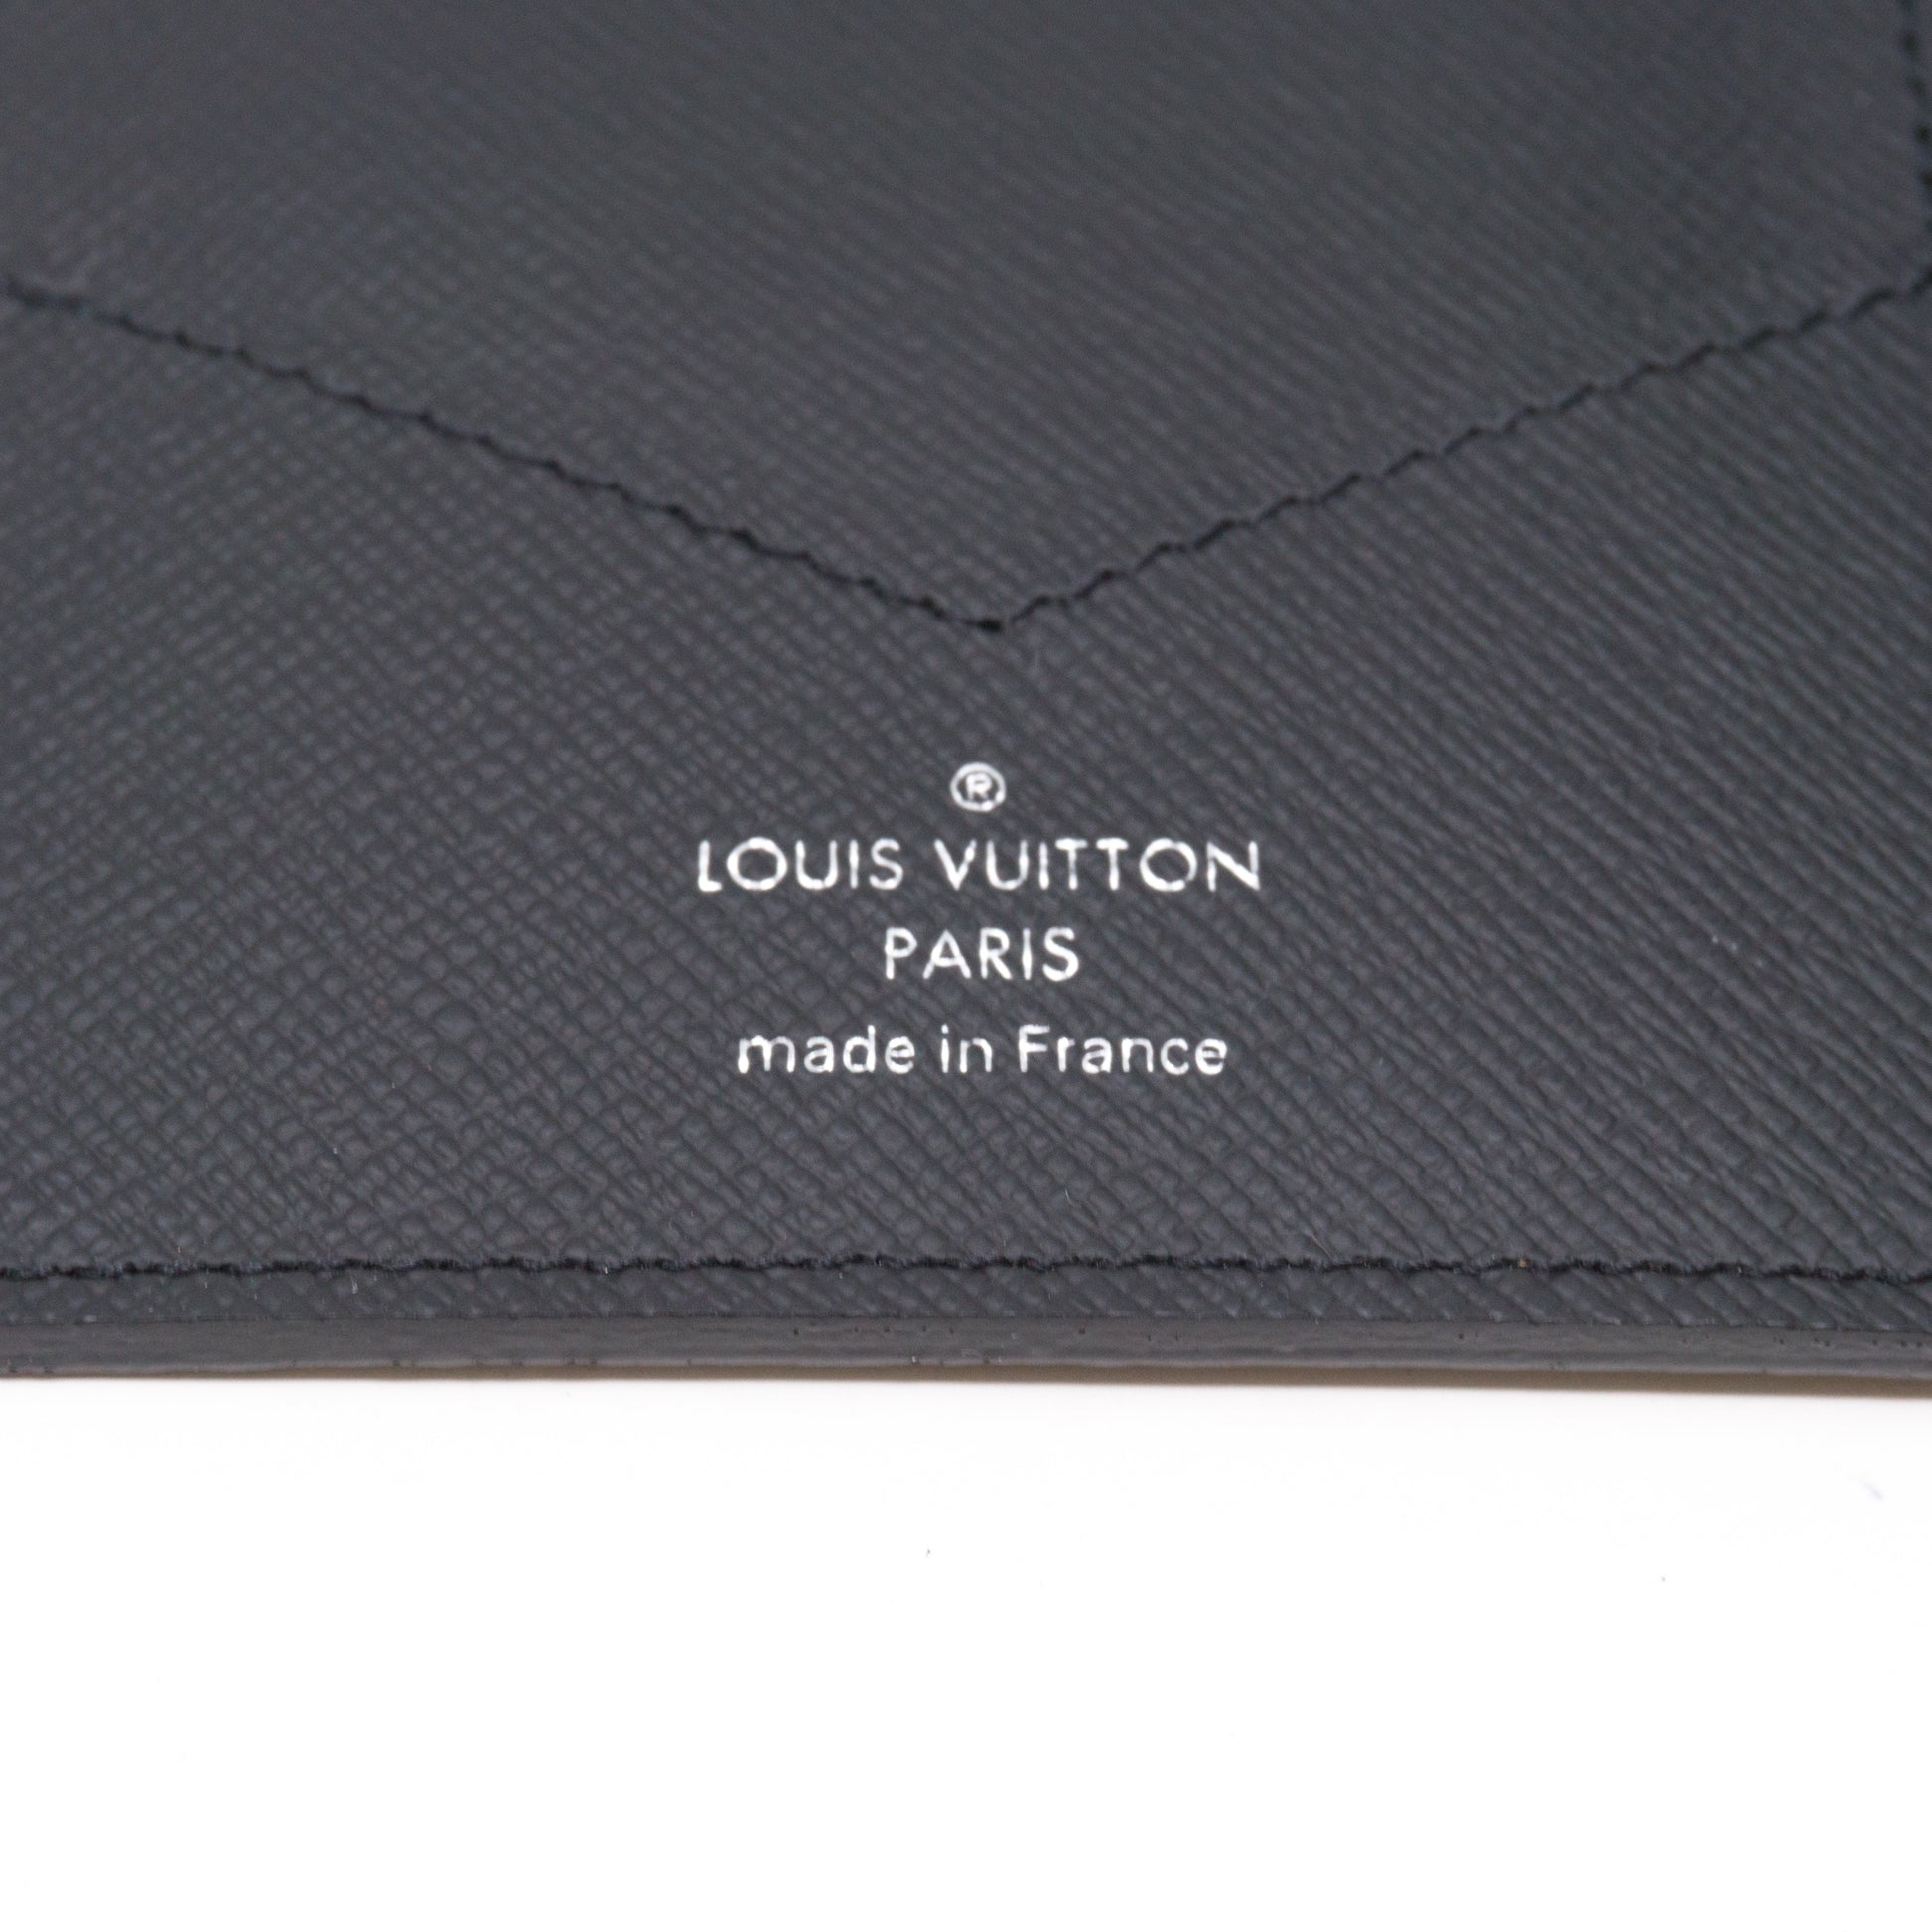 Vintage Louis Vuitton Damier Ebene Passport Case Cover CA0010